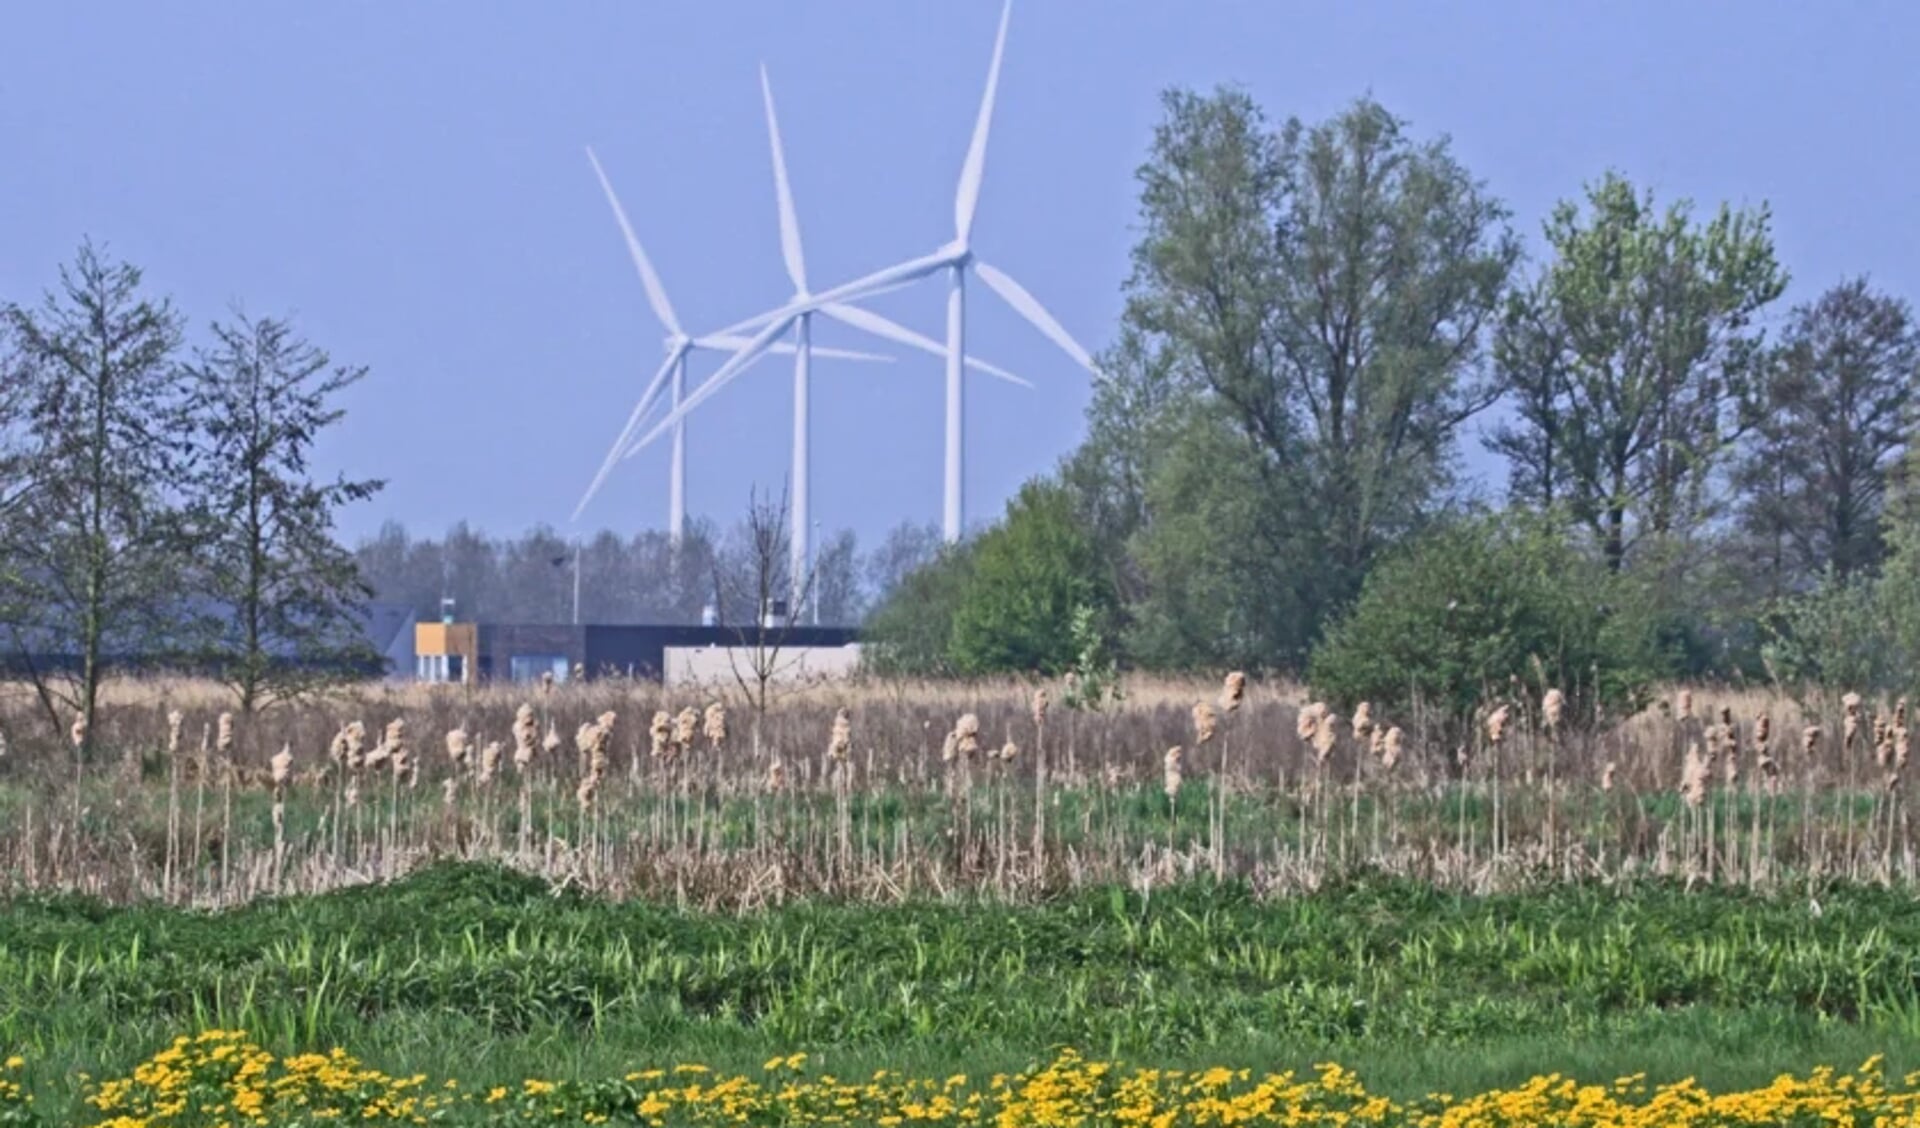 Windmolens kunnen het landschap domineren (foto ter illustratie). Beeld: Bert Verver